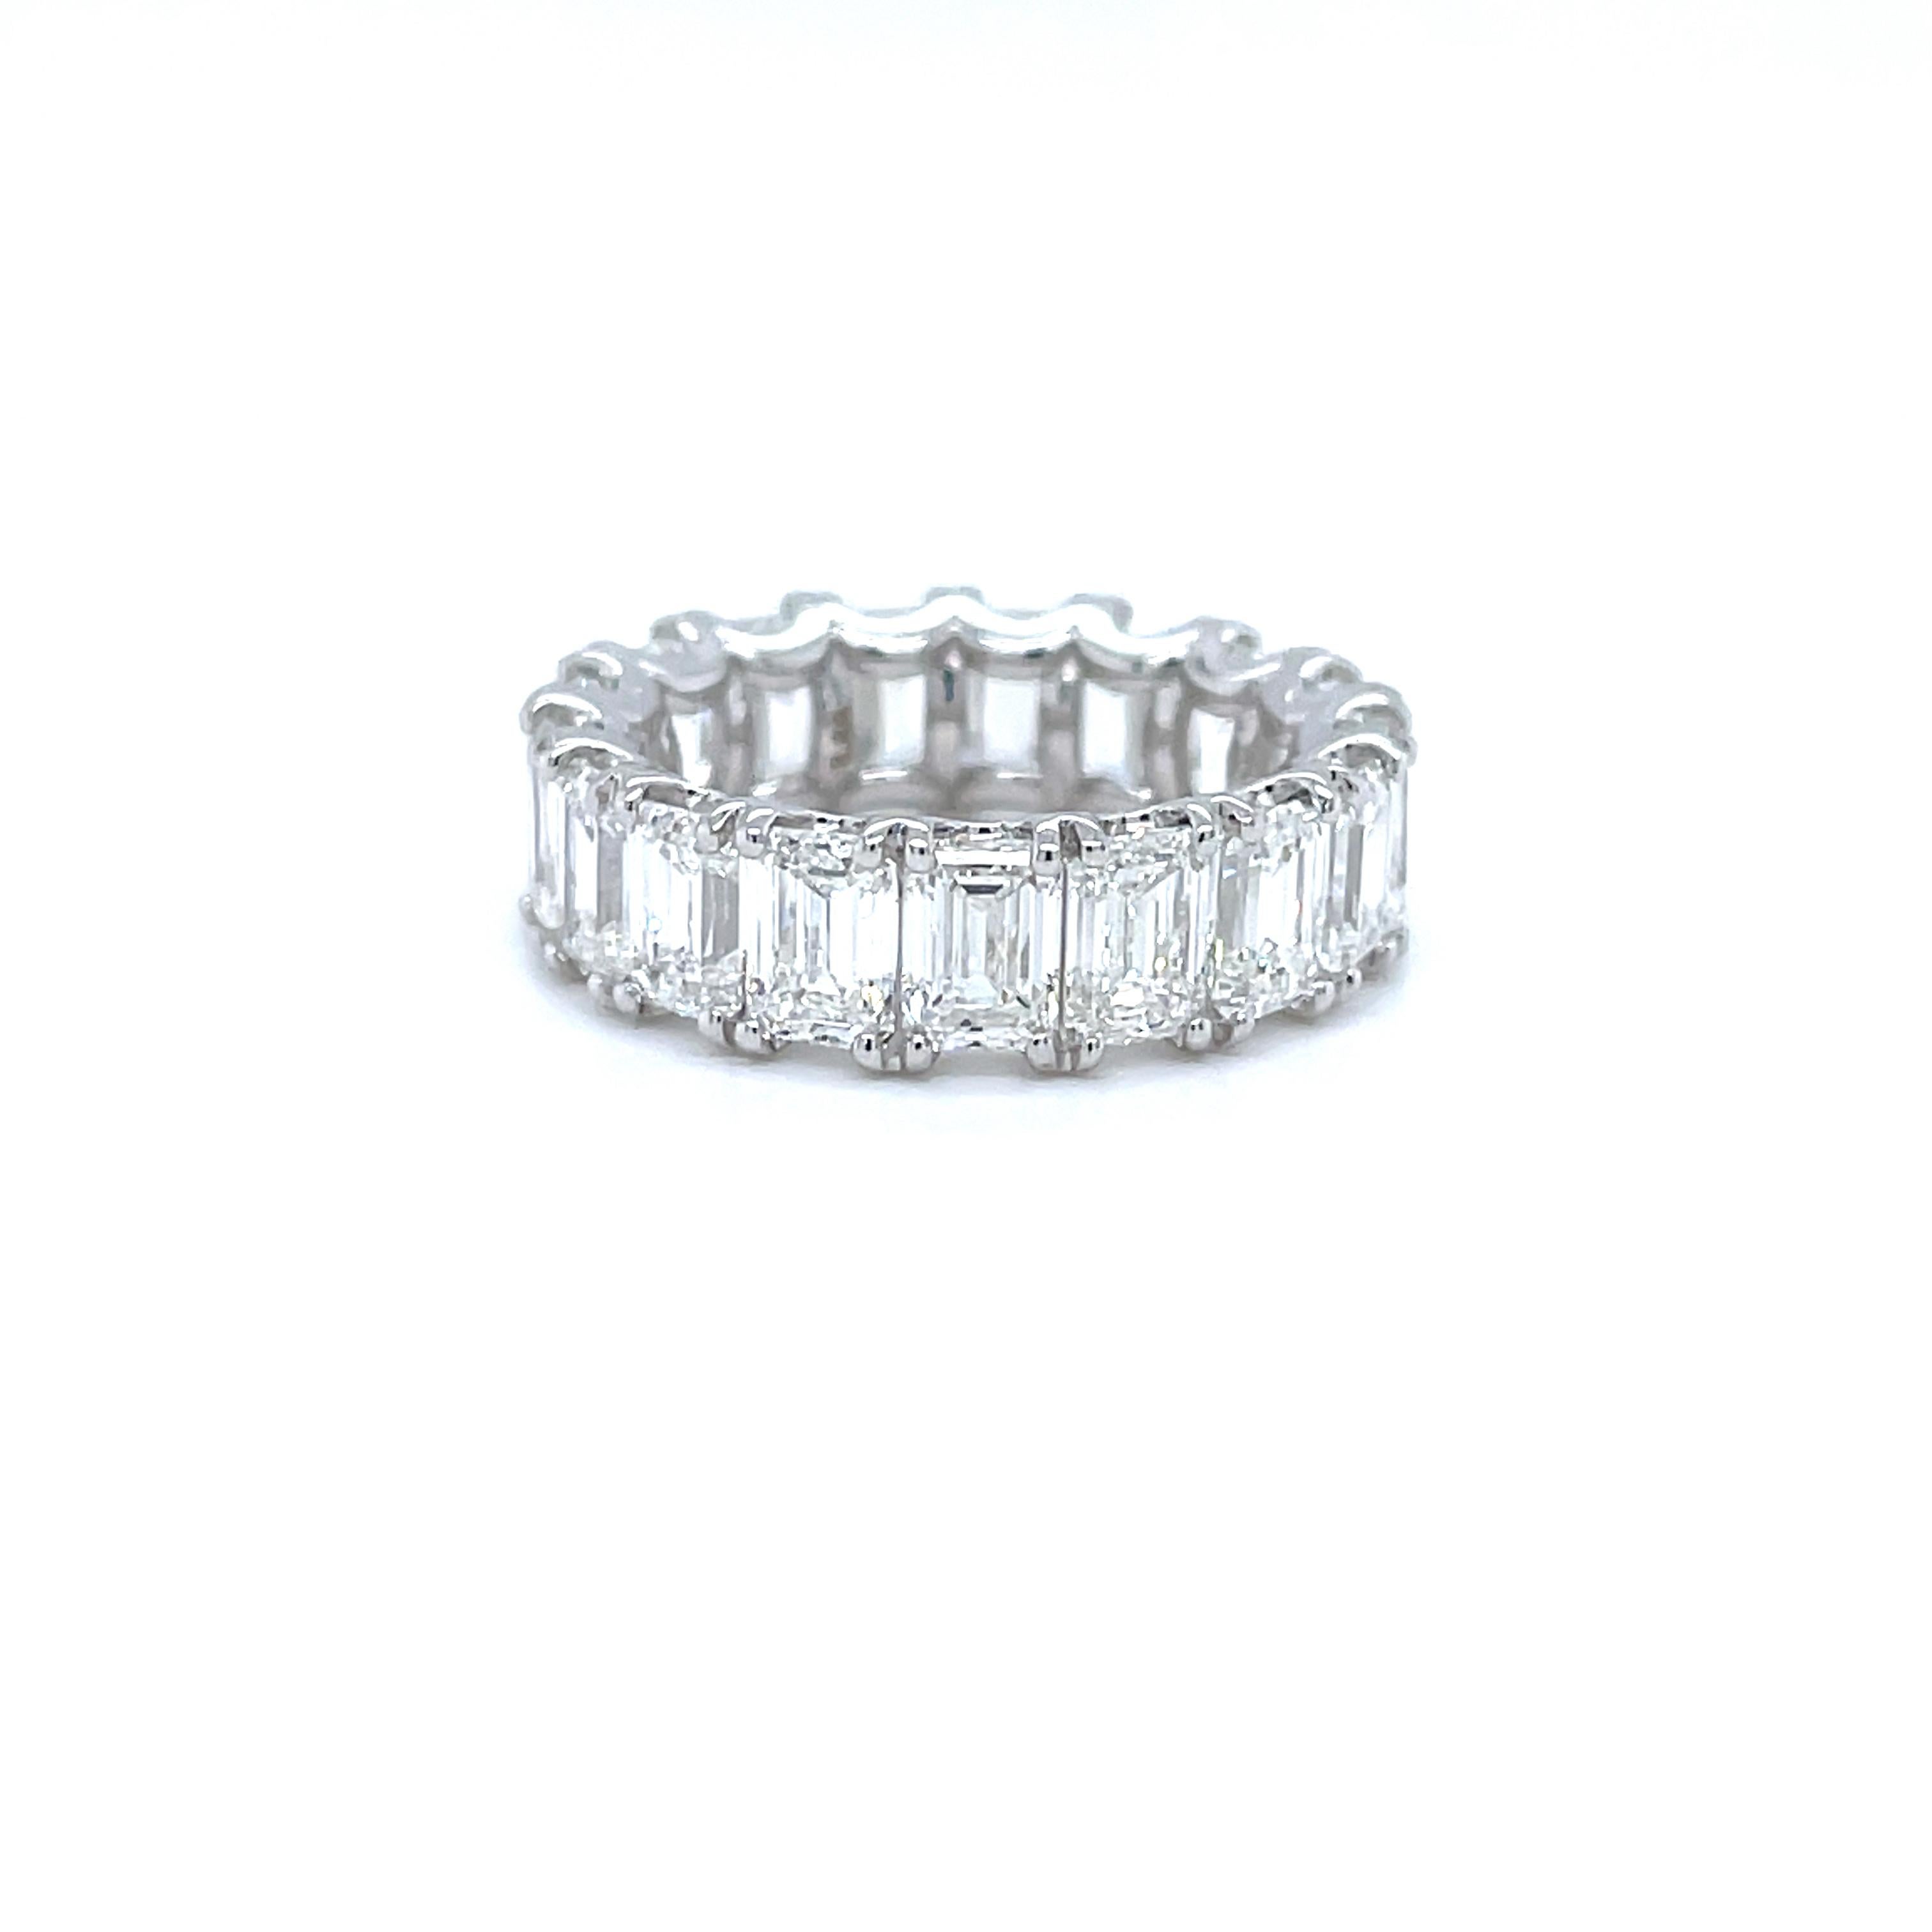 Zeitloser Luxus mit einem GIA-zertifizierten 8,88-Kilo-Smaragd-Diamantring für die Ewigkeit

Gönnen Sie sich unvergleichlichen Luxus mit diesem atemberaubenden Diamantring für die Ewigkeit. Dieses exquisite Stück zeichnet sich durch ein